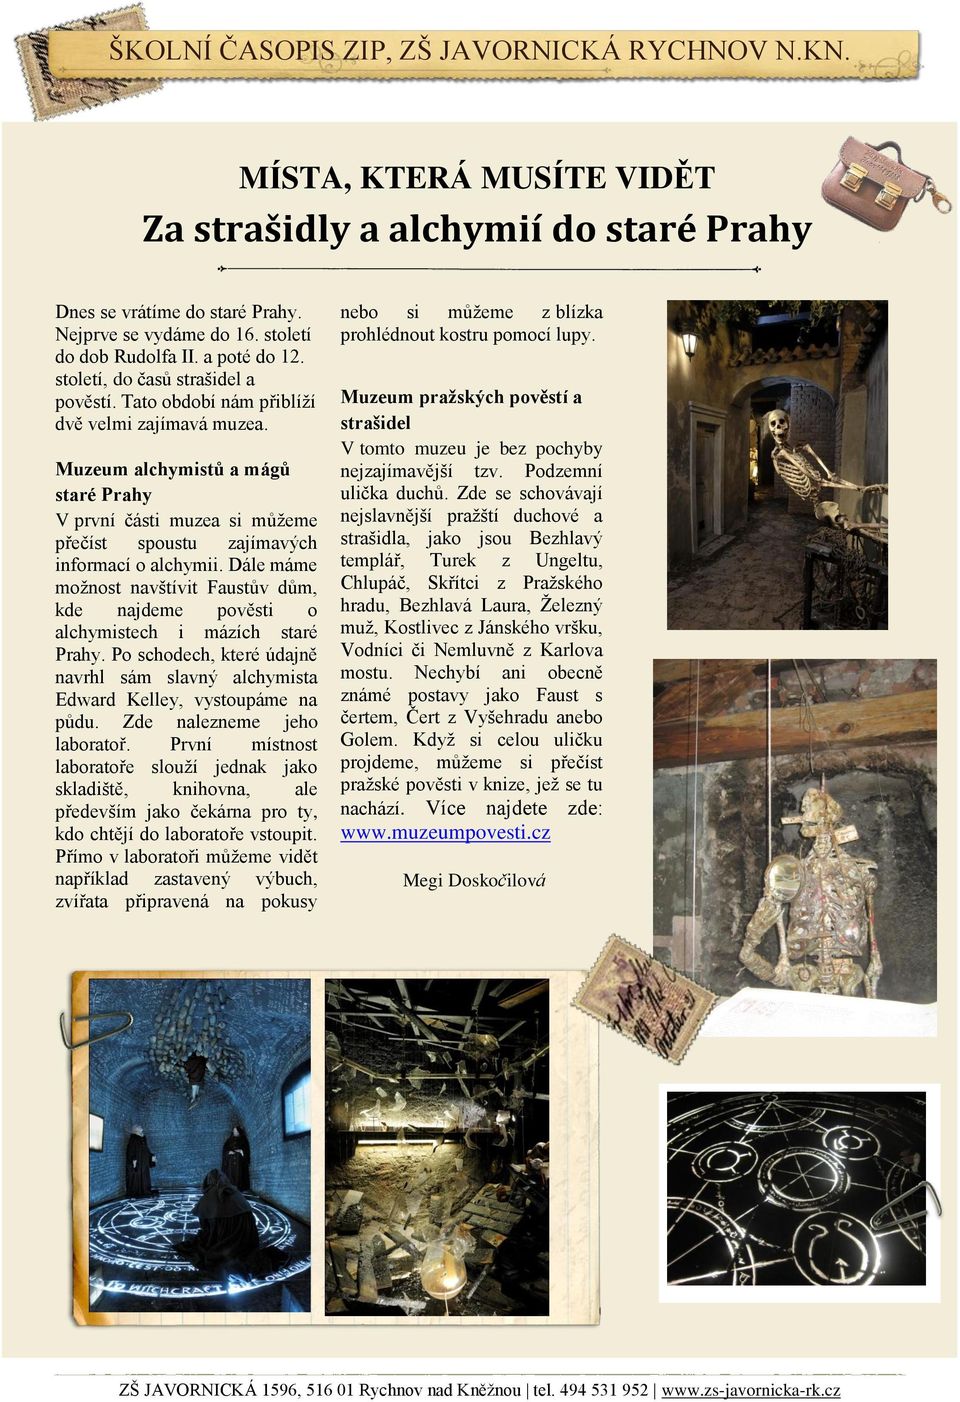 Muzeum alchymistů a mágů staré Prahy V první části muzea si můžeme přečíst spoustu zajímavých informací o alchymii.